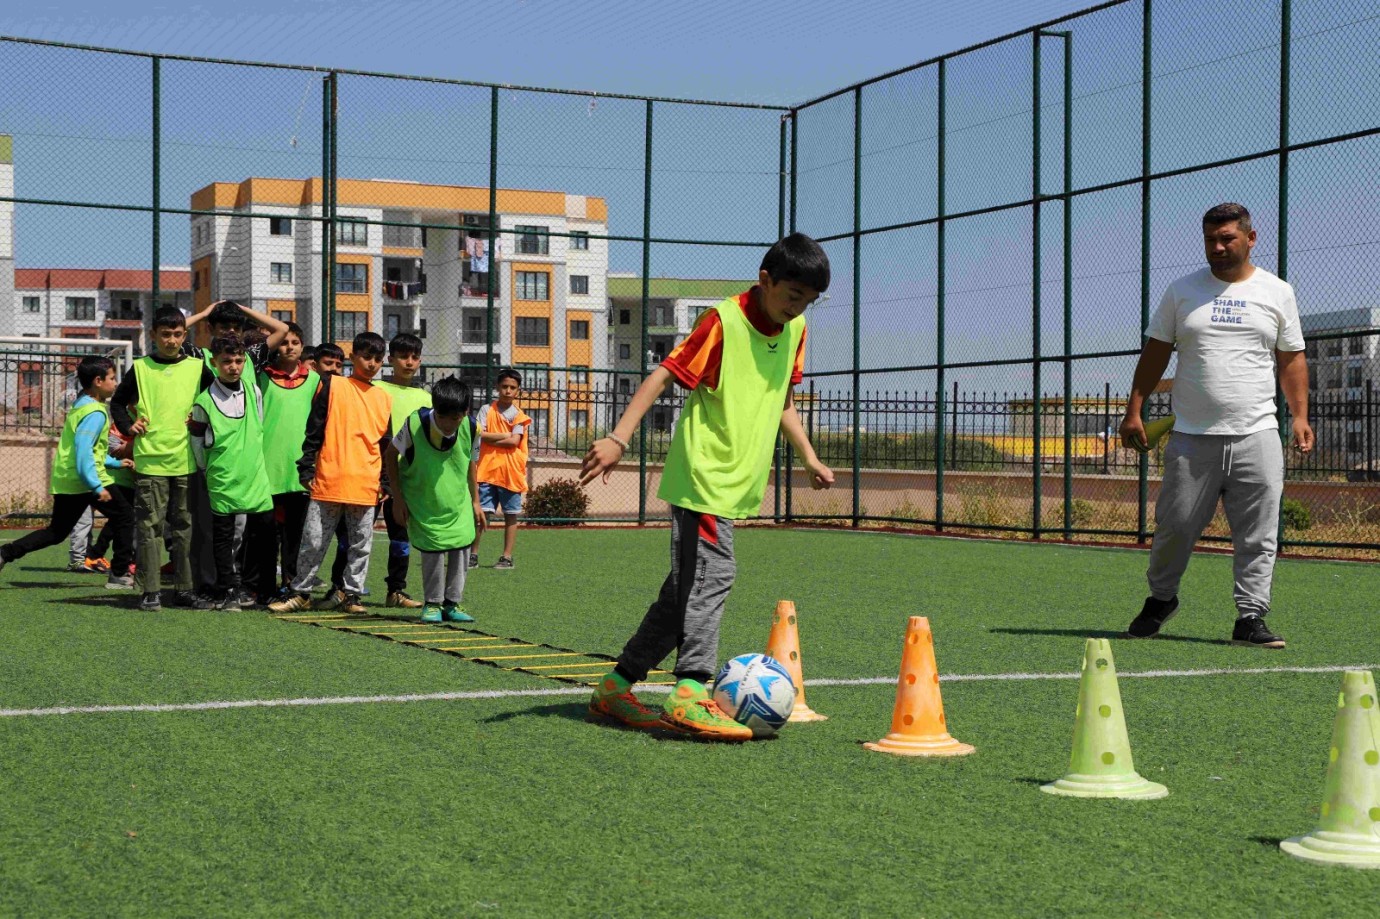 Karaköprü’de Çocuklar Zamanını Spor Kurslarında Değerlendiriyor